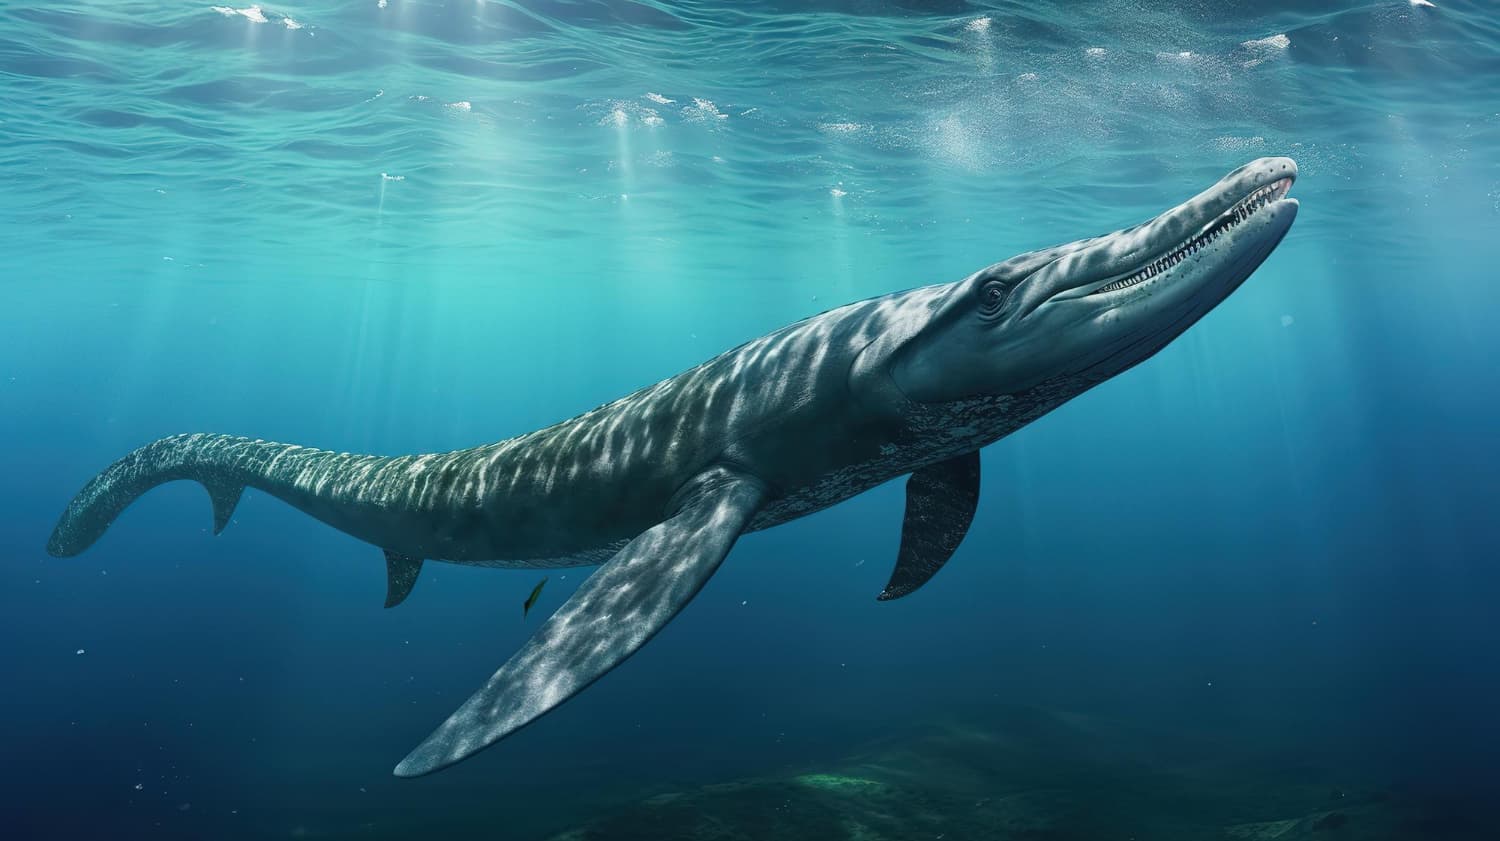 La evolución de las ballenas a lo largo de millones de años, desde sus ancestros terrestres hasta las especies acuáticas actuales